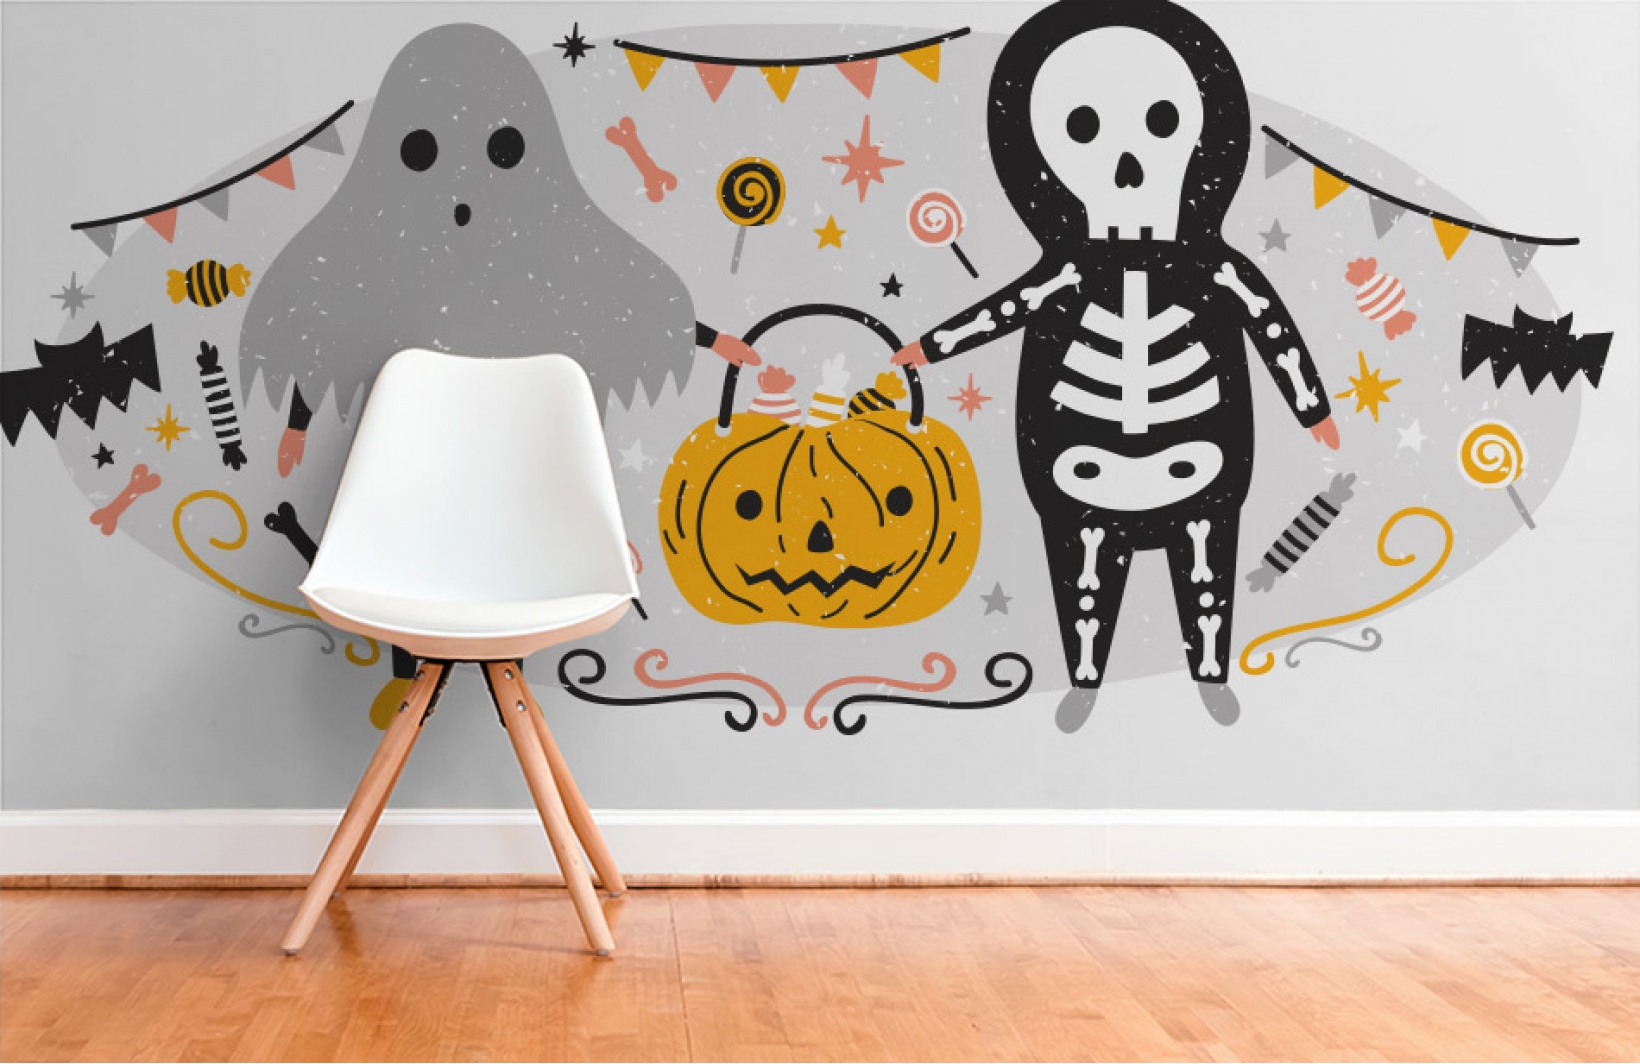 Фотообои с сюжетом праздника Хеллоуин в детскую комнату мальчику Узоры на Стене